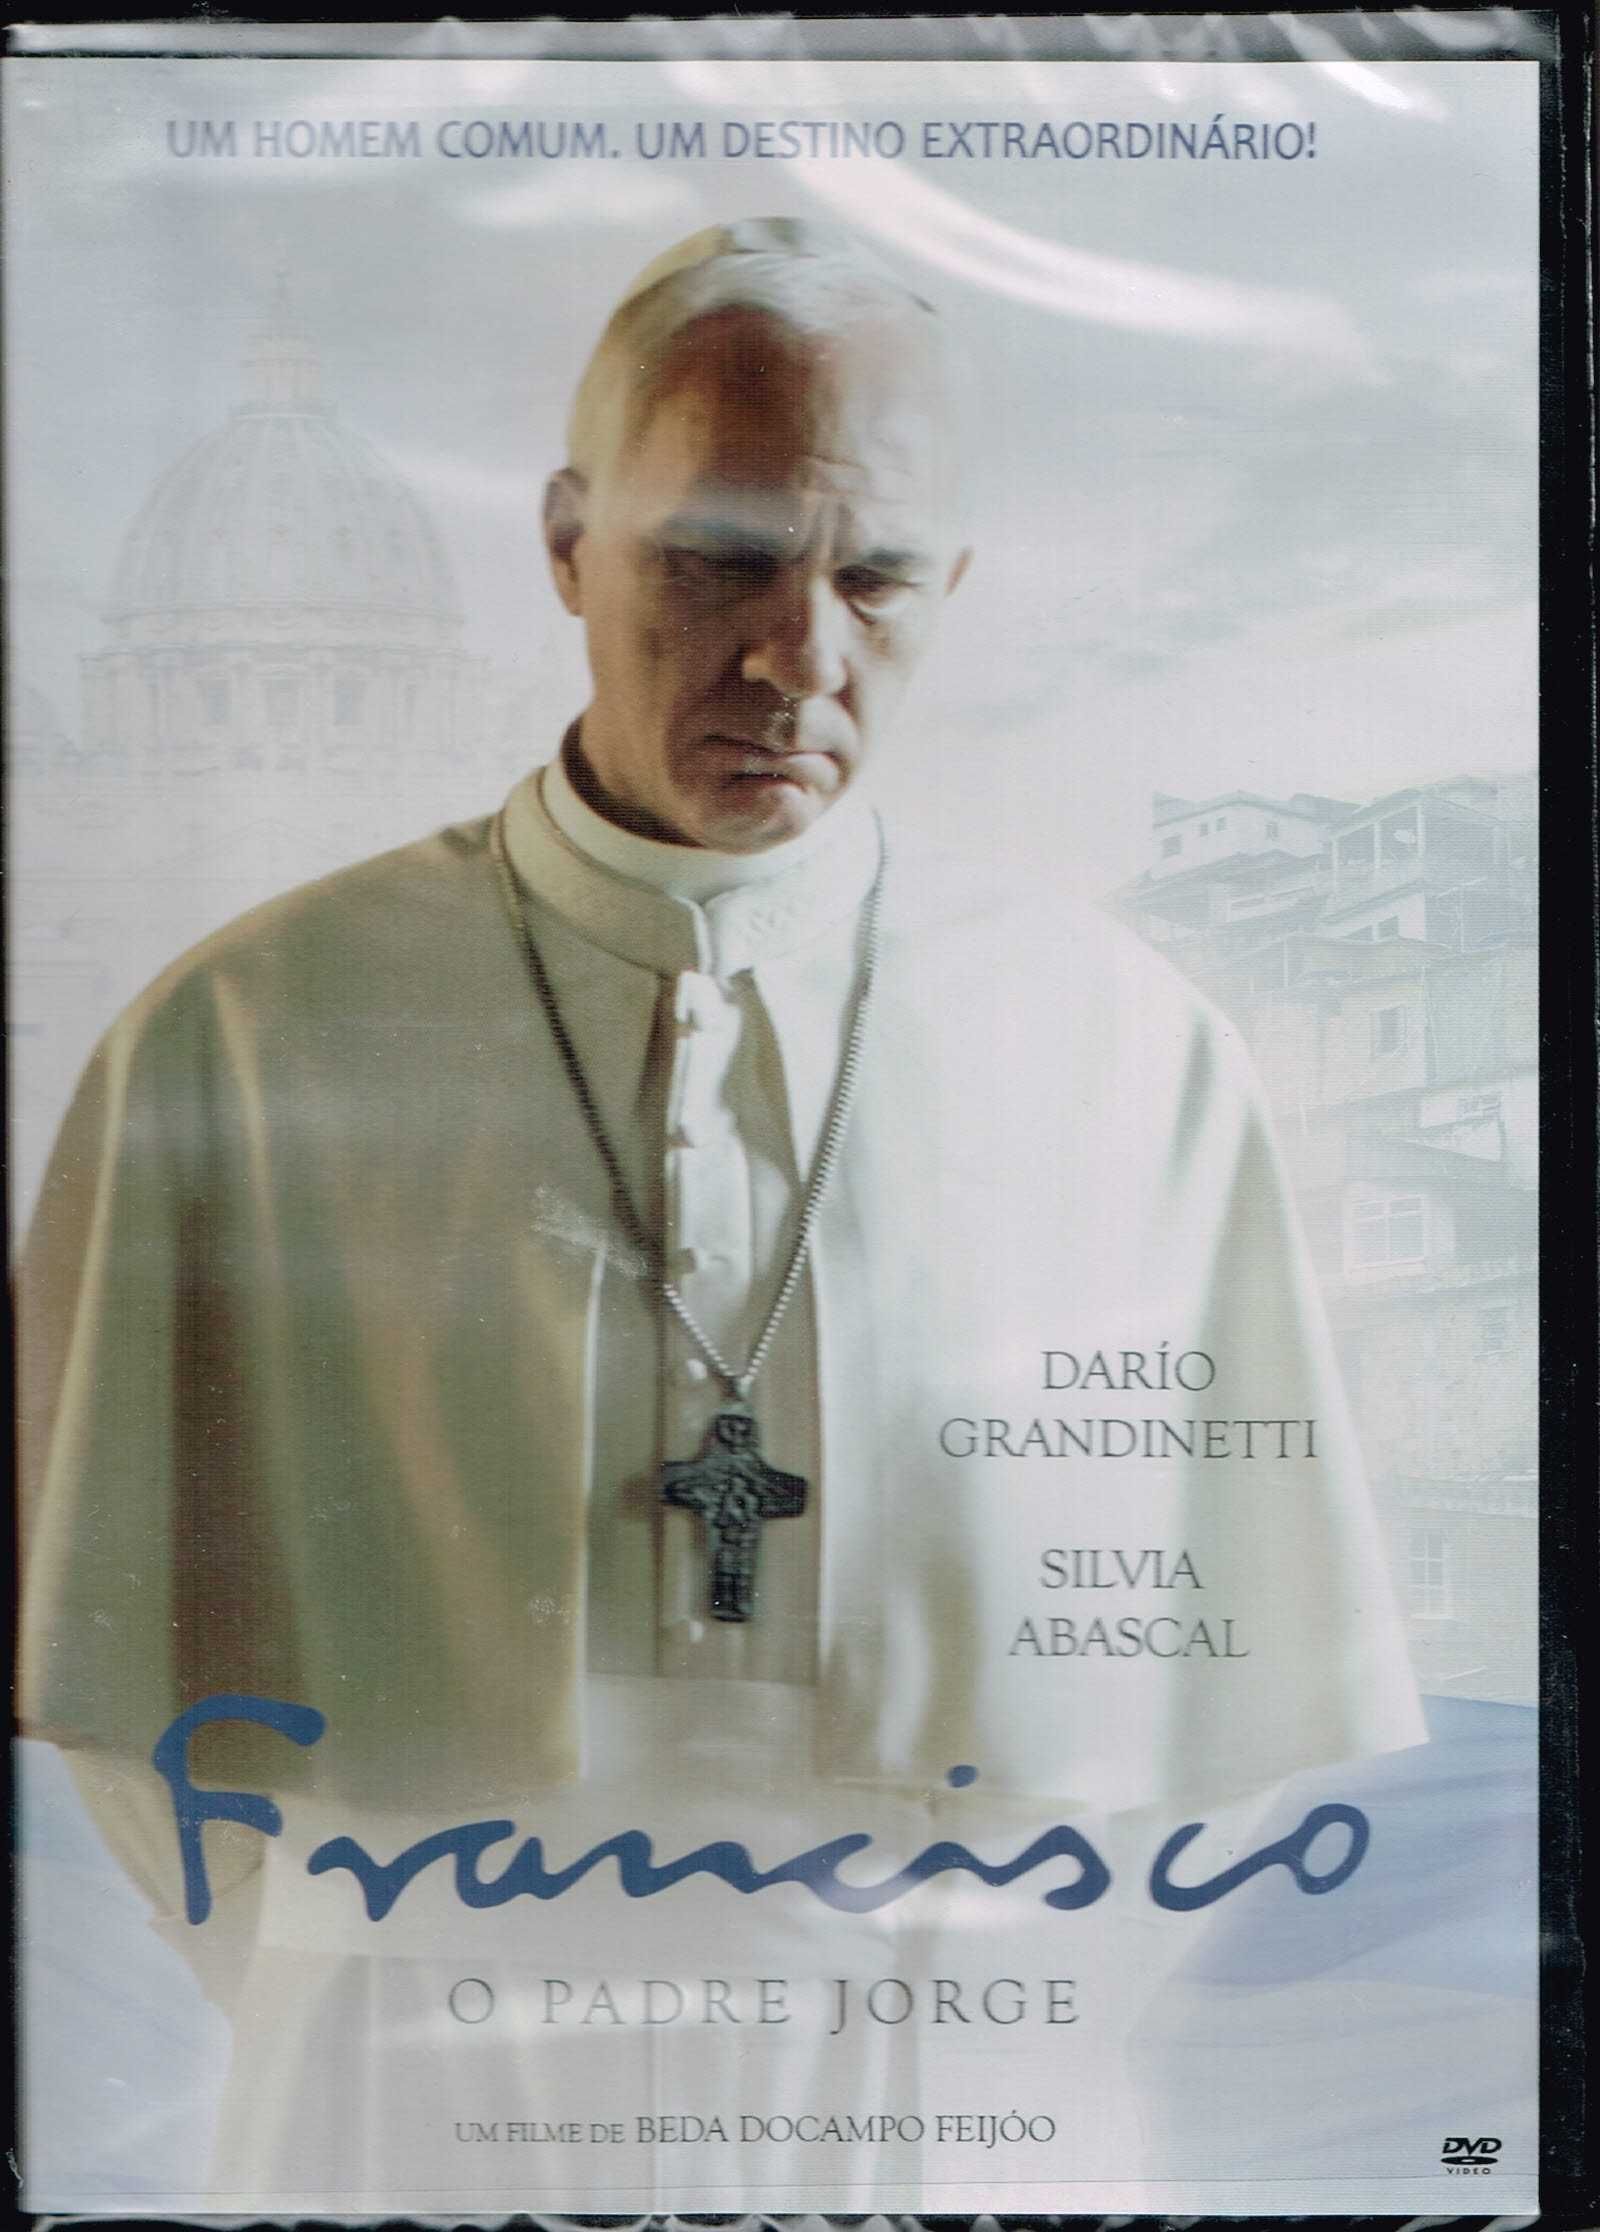 Filme em DVD: FRANCISCO O Padre Jorge - NOVO! A Estrear! SELADO!